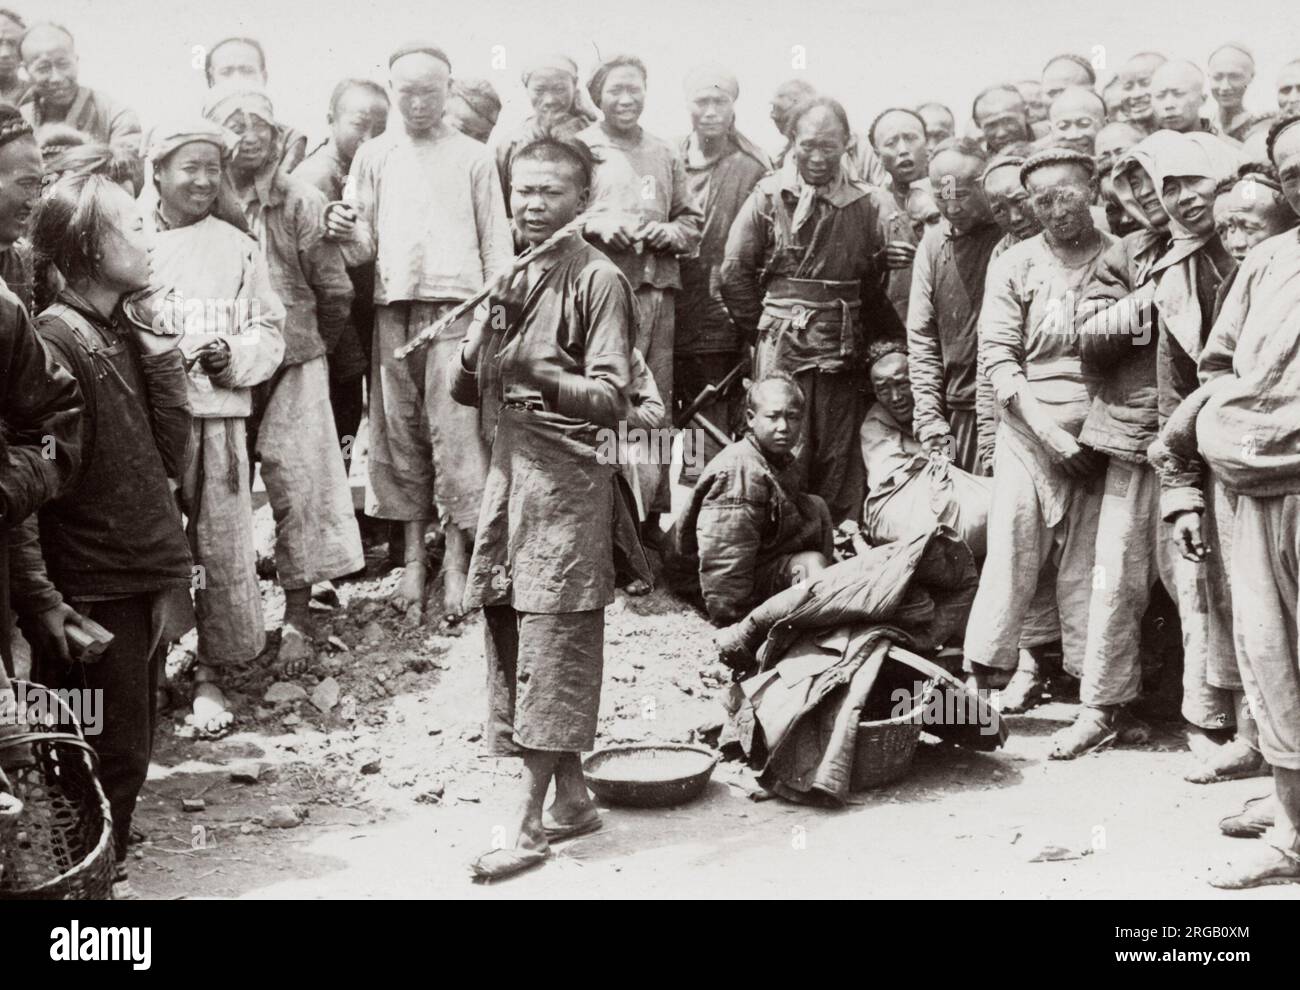 Photo du début du XXe siècle : la vie quotidienne, les ouvriers agricoles paysans chinois, Chine Banque D'Images